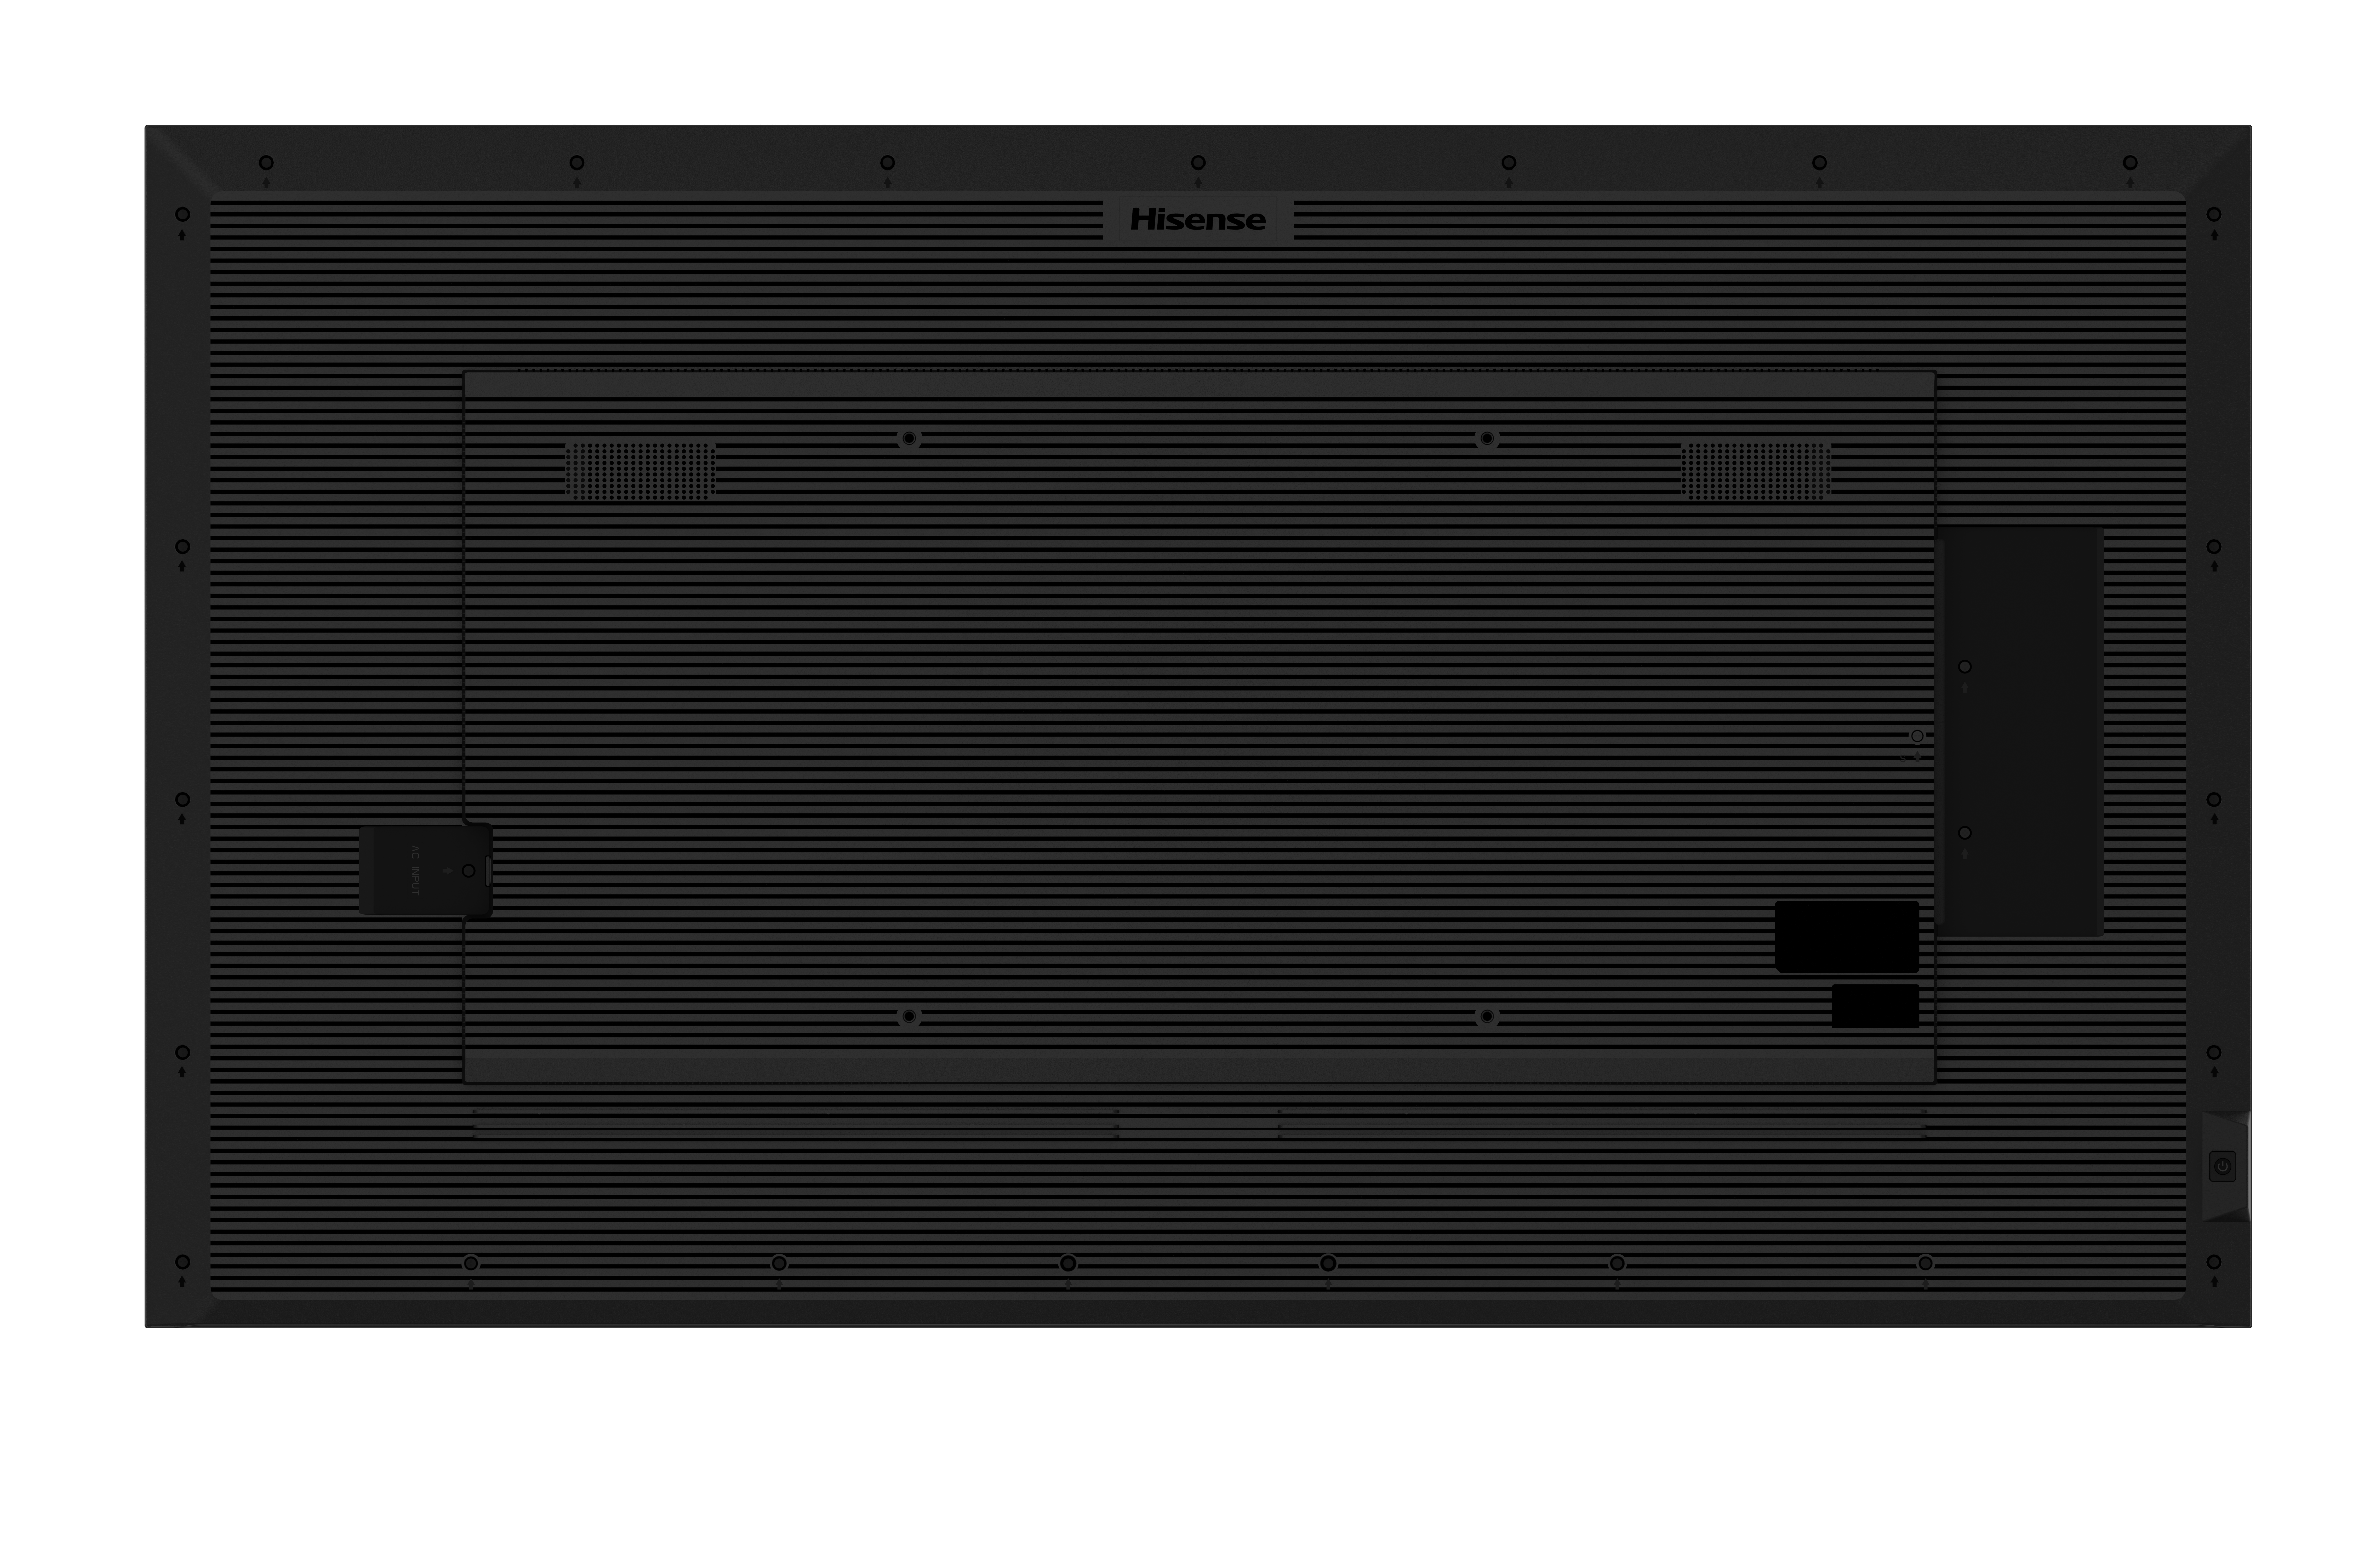 Hisense 65DM66D - 65 Zoll - 500 cd/m² - Ultra-HD - 3840x2160 Pixel - 24/7 - Digital Signage Display